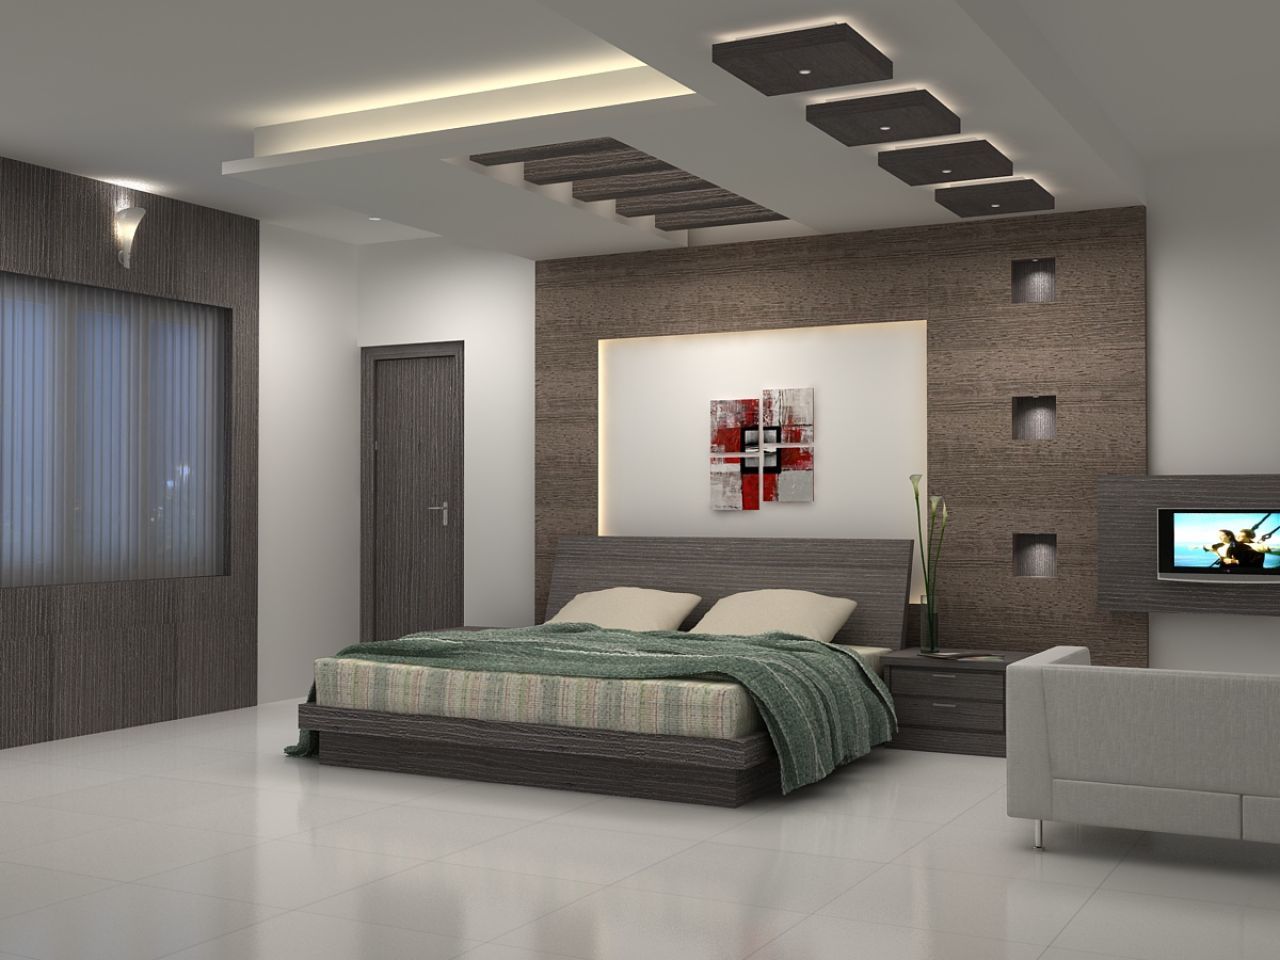 bedroom-false-ceiling-designs | Our Blog